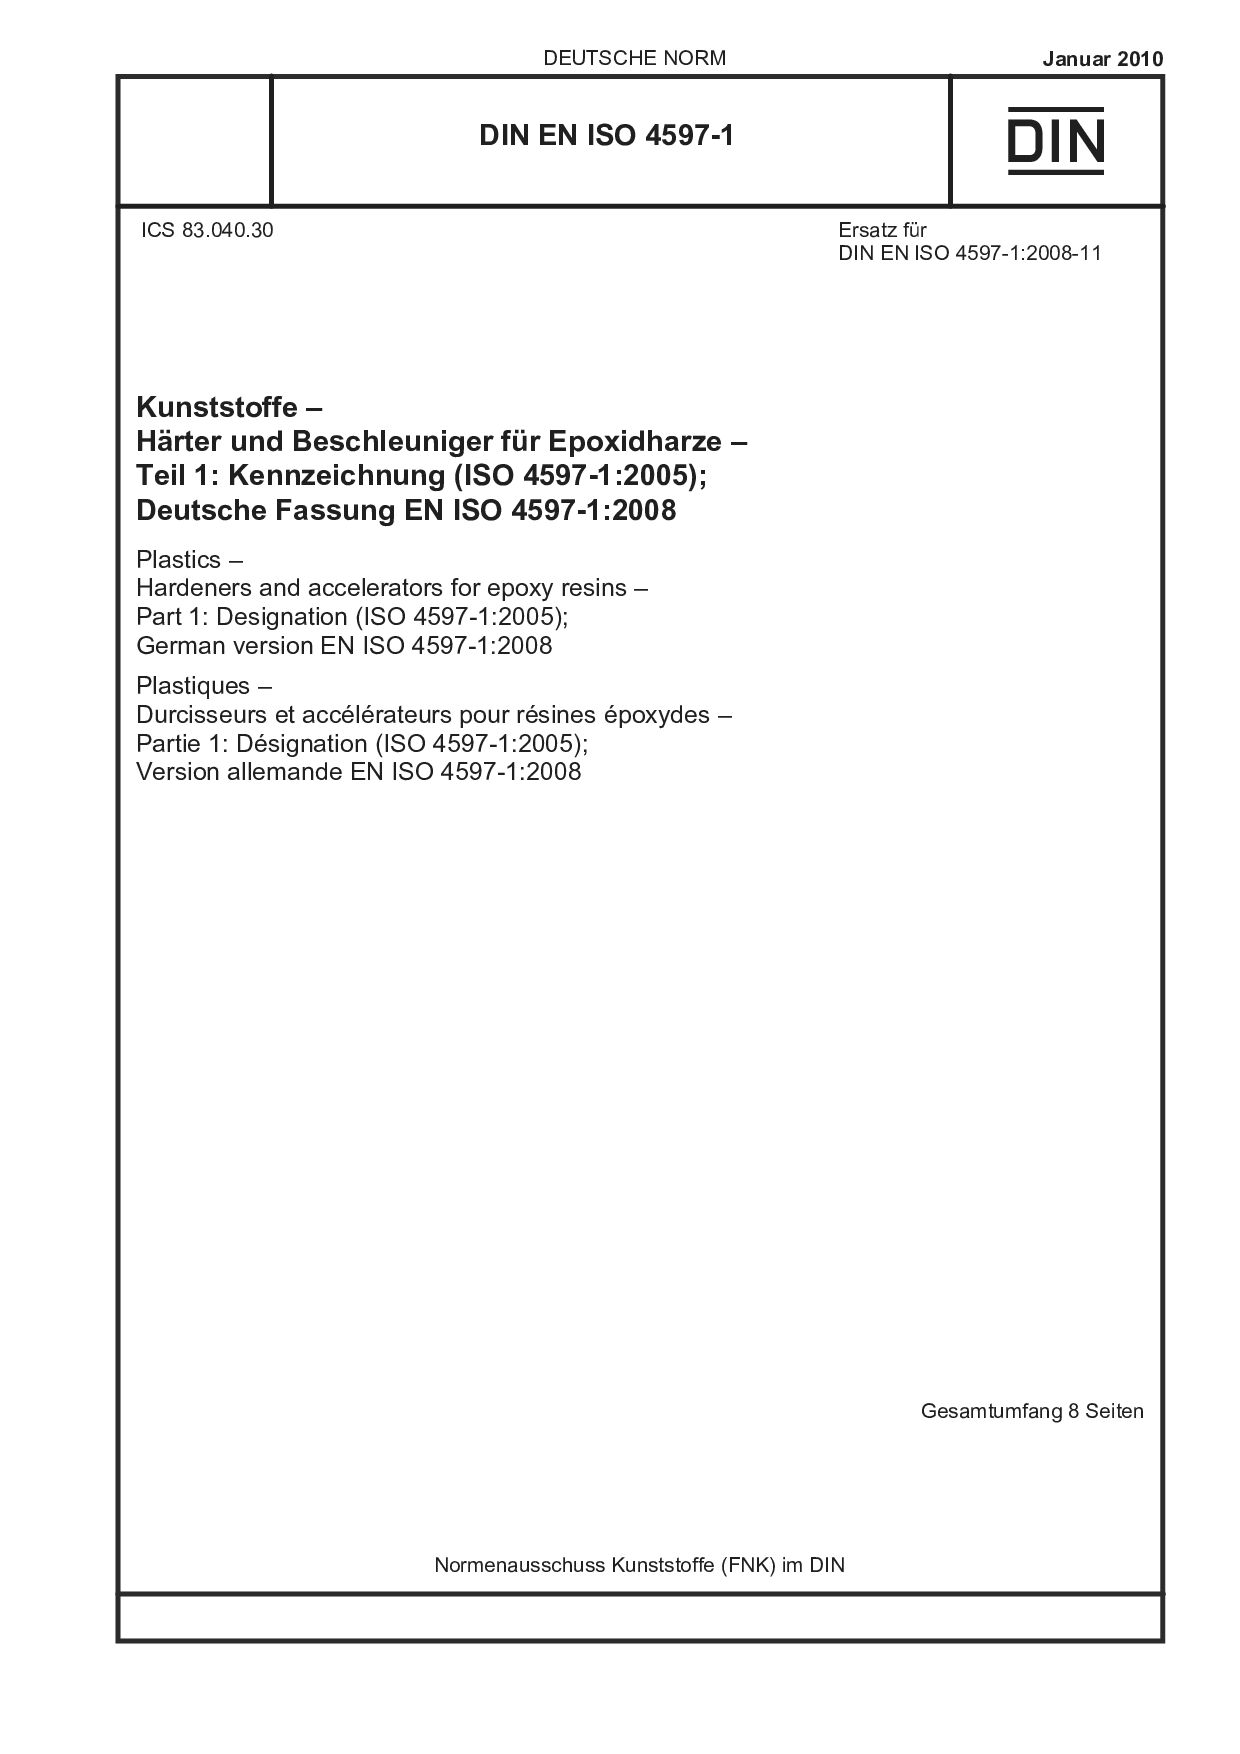 DIN EN ISO 4597-1:2010